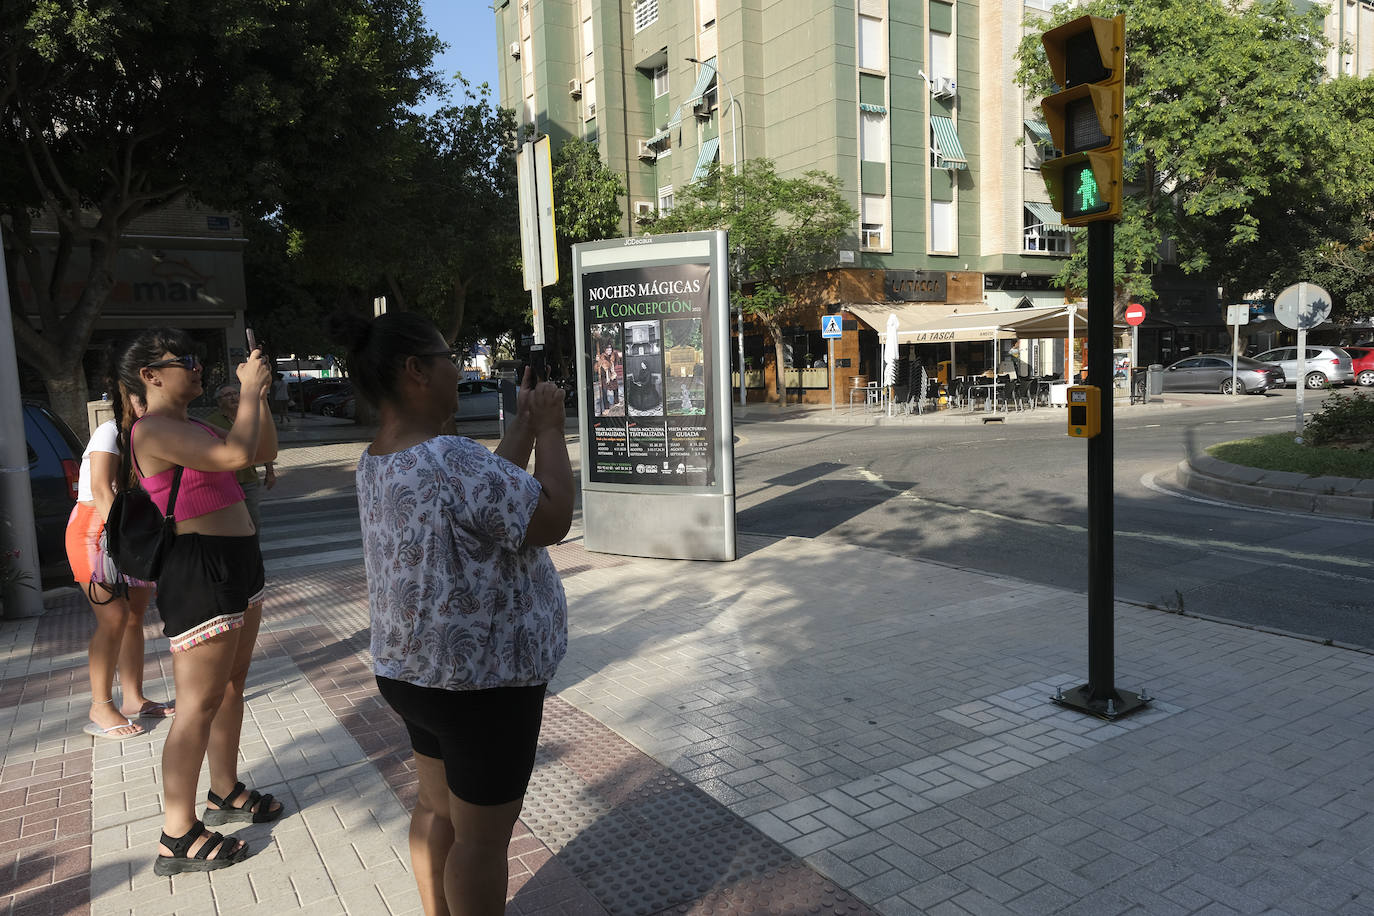 El semáforo de Chiquito de la Calzada en Málaga, una gran idea mal resuelta